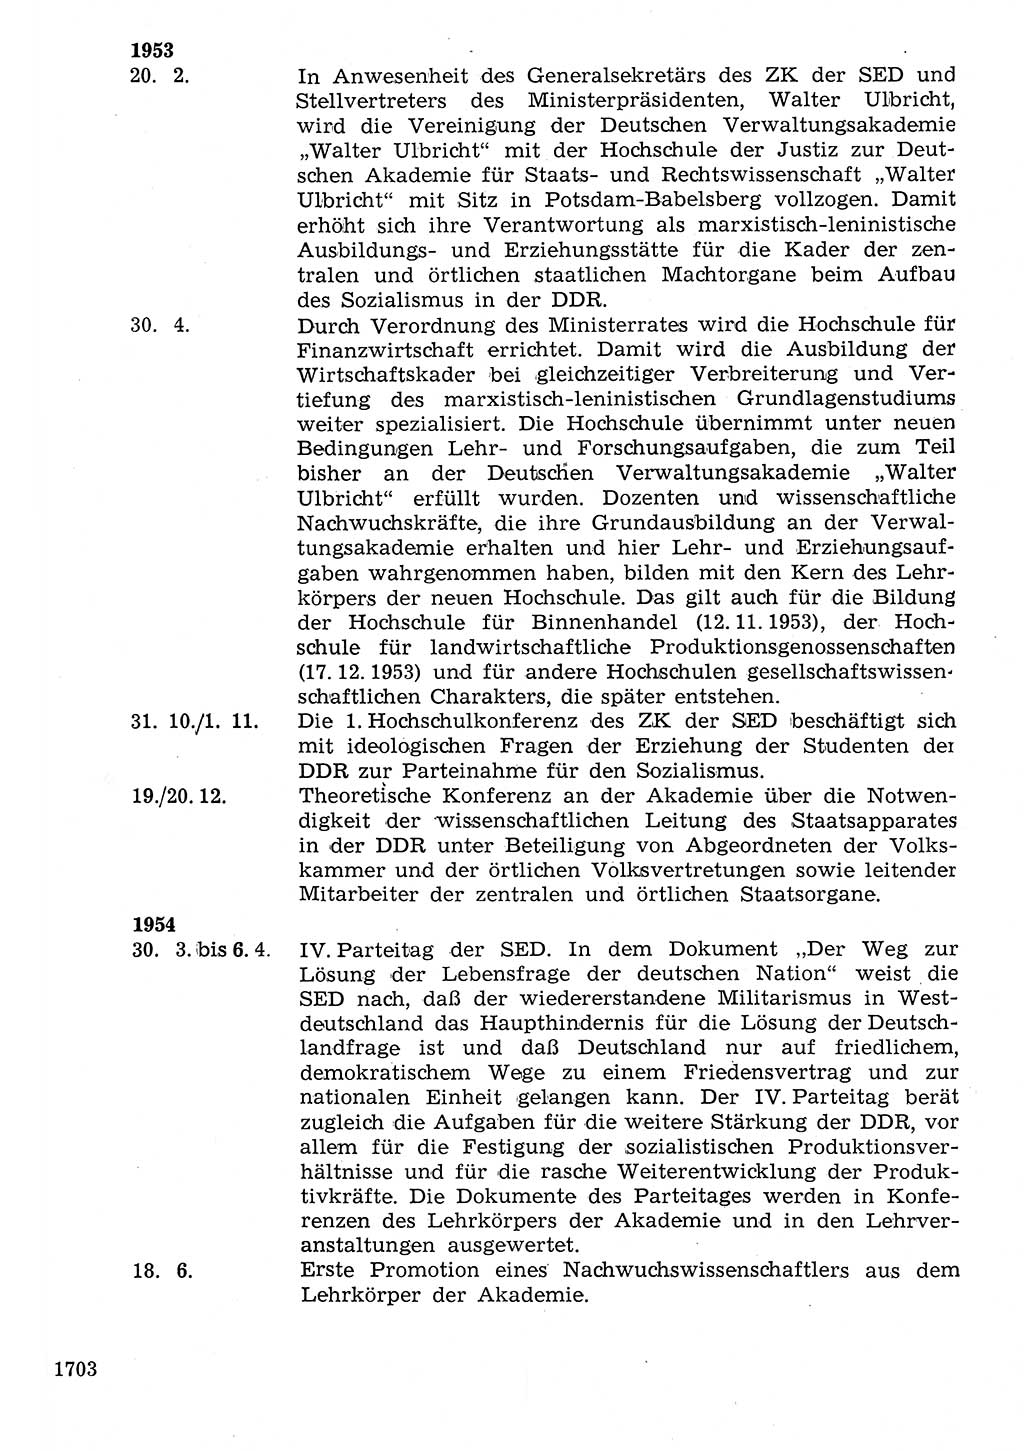 Staat und Recht (StuR), 17. Jahrgang [Deutsche Demokratische Republik (DDR)] 1968, Seite 1703 (StuR DDR 1968, S. 1703)